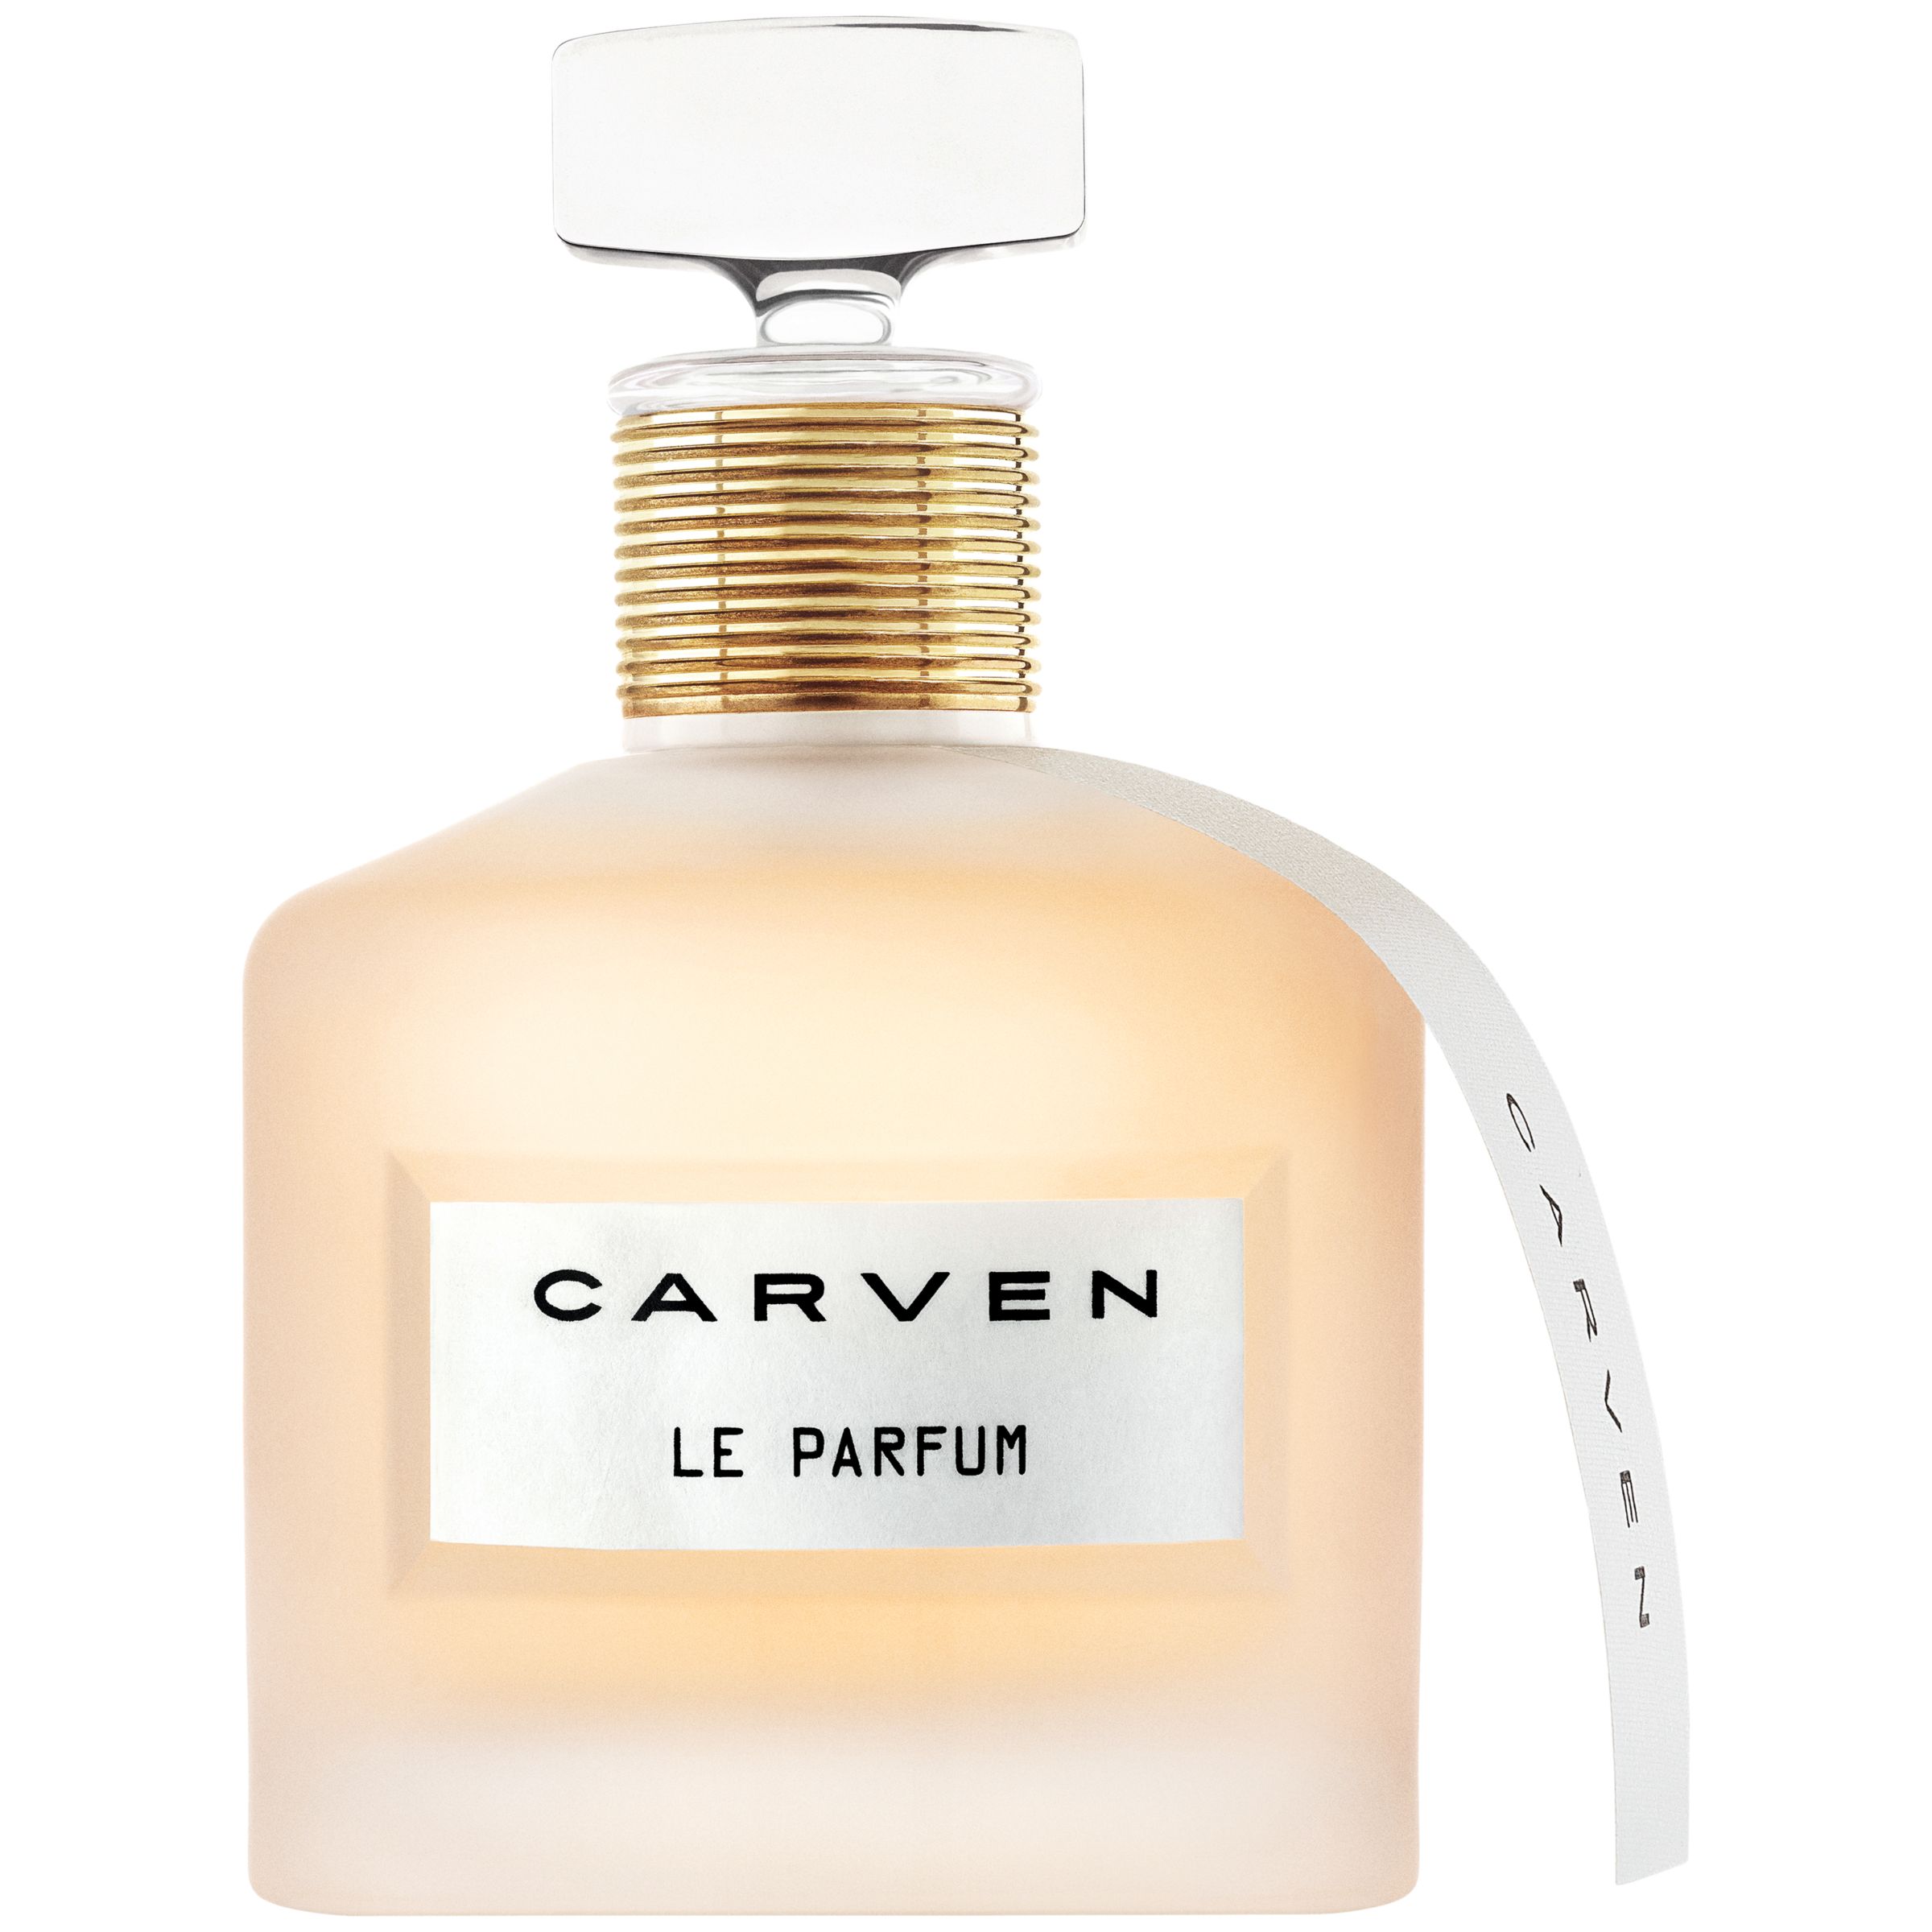 Carven Le Parfum Eau de Parfum, 50ml